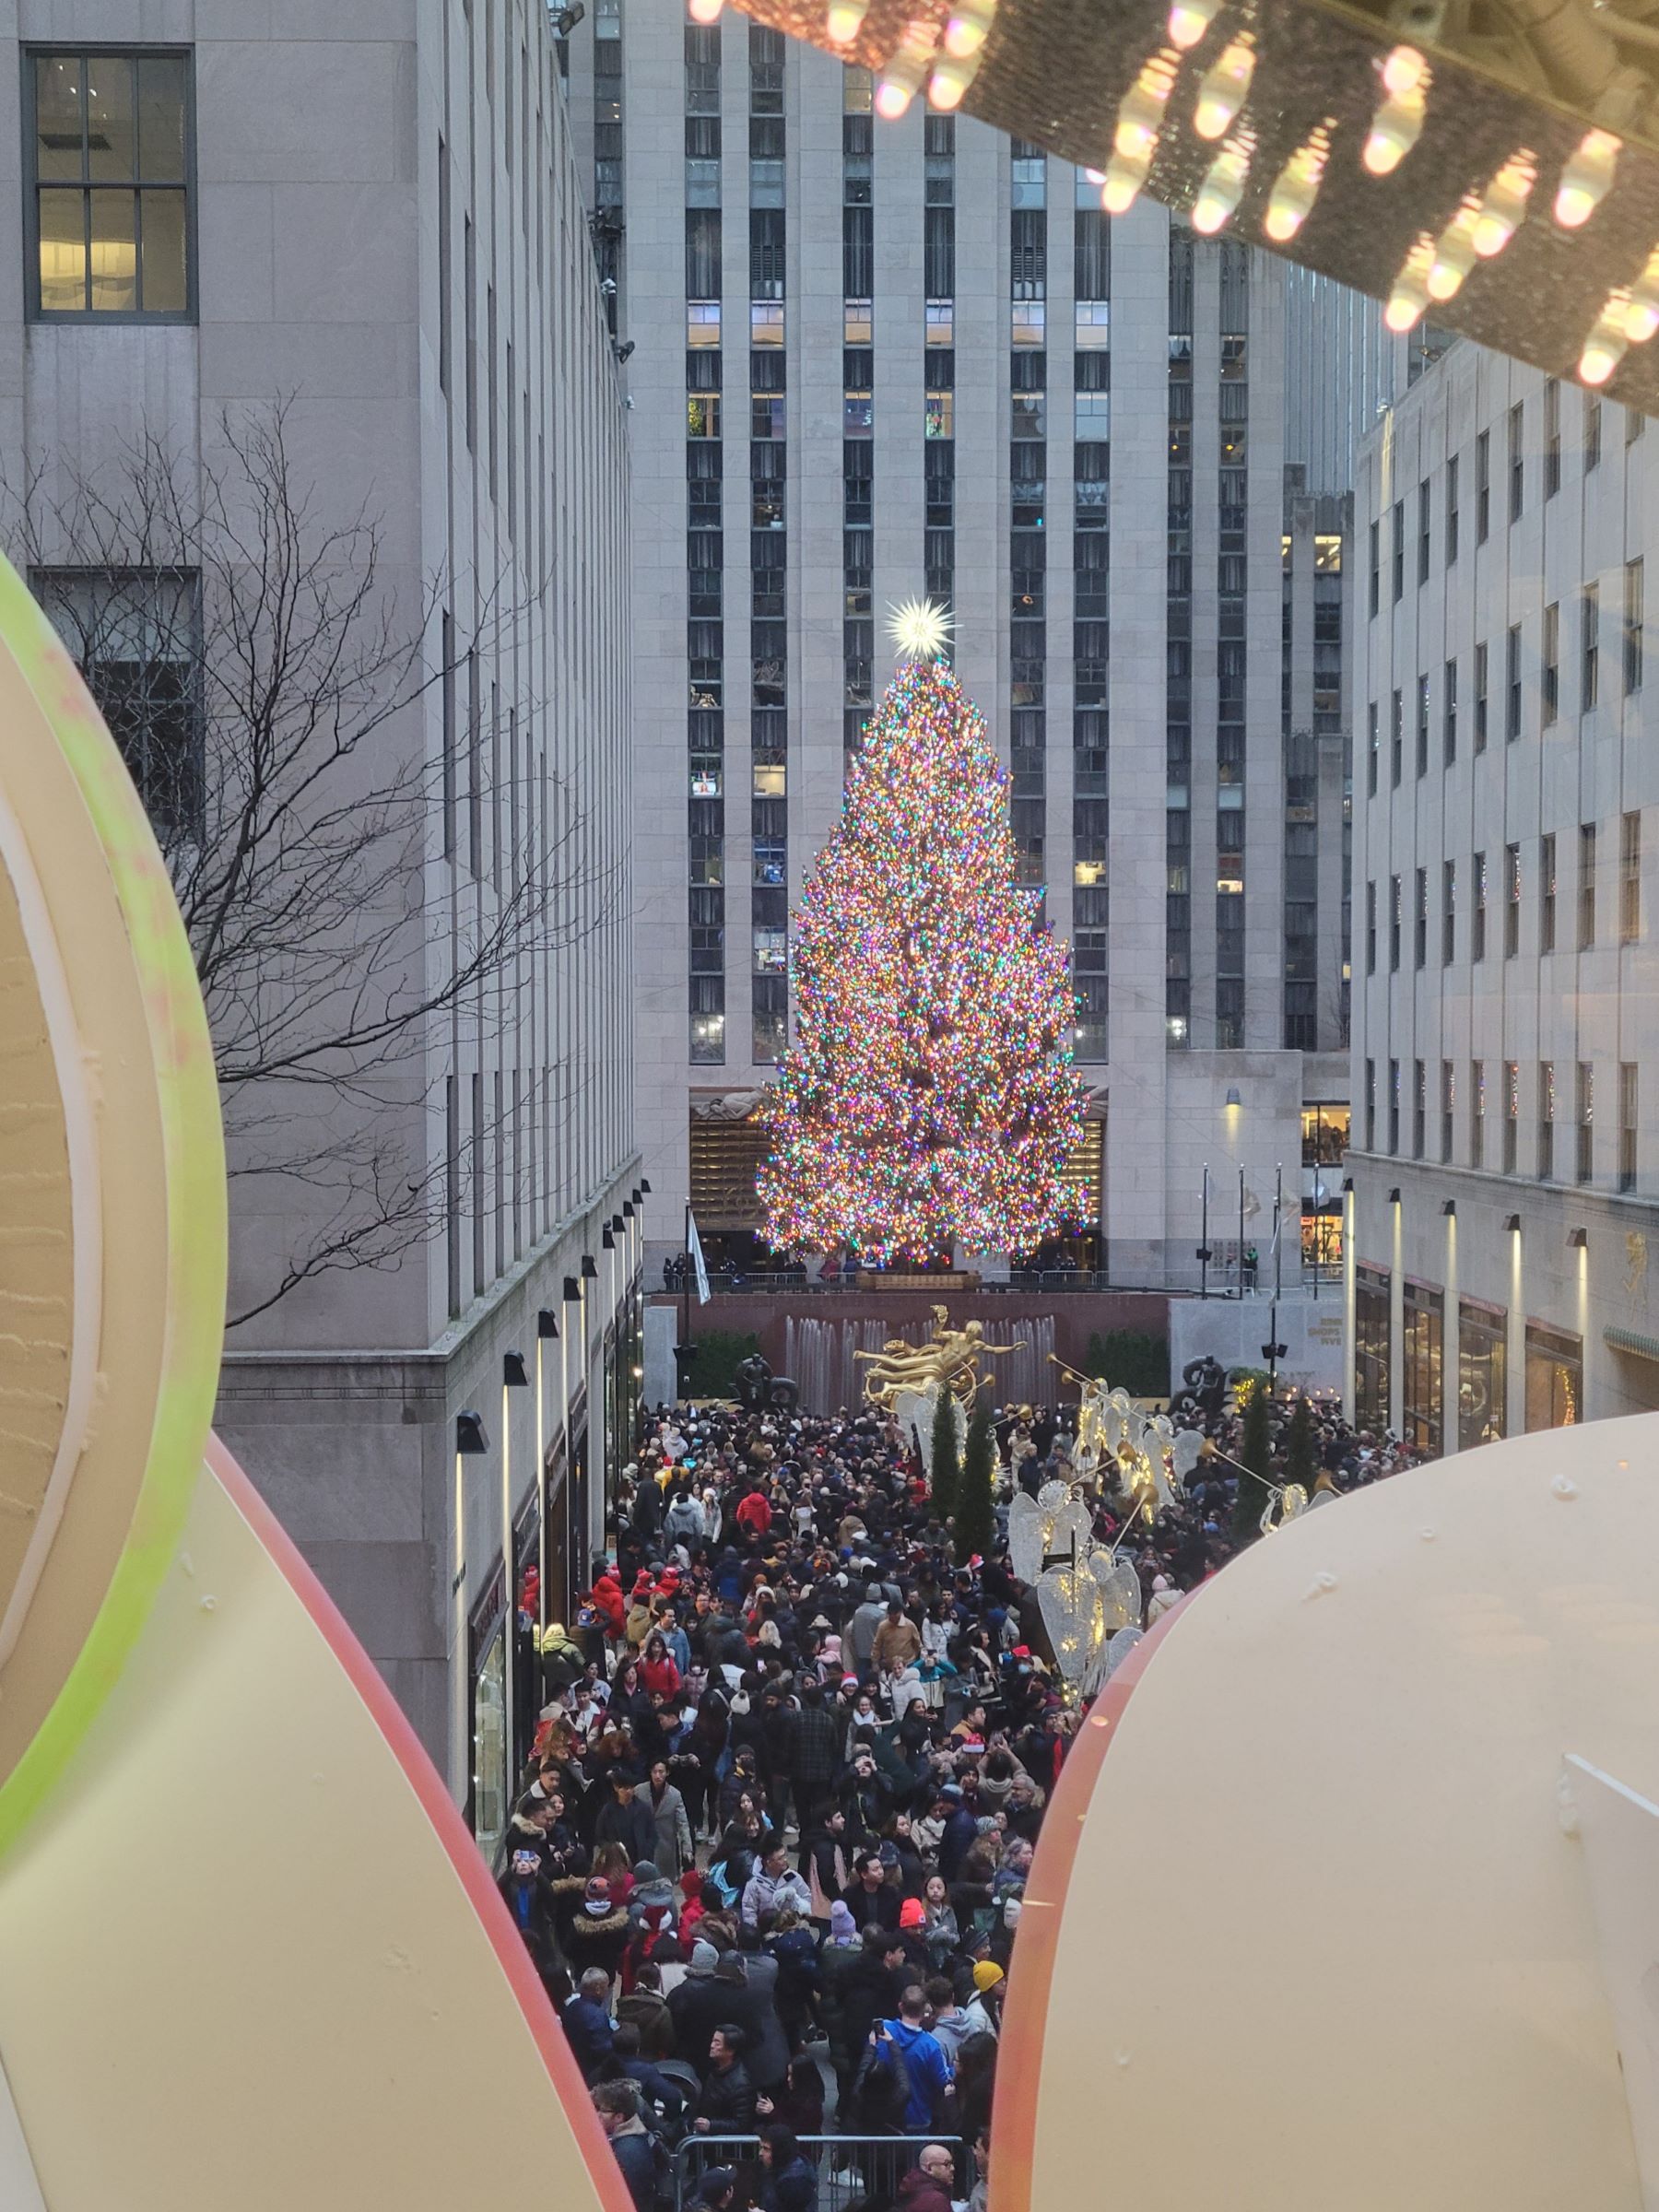 록펠러센터 크리스마스 트리와 아이스링크, 삭스피프스애비뉴(Saks Fifth Avenue) 백화점의 연말장식